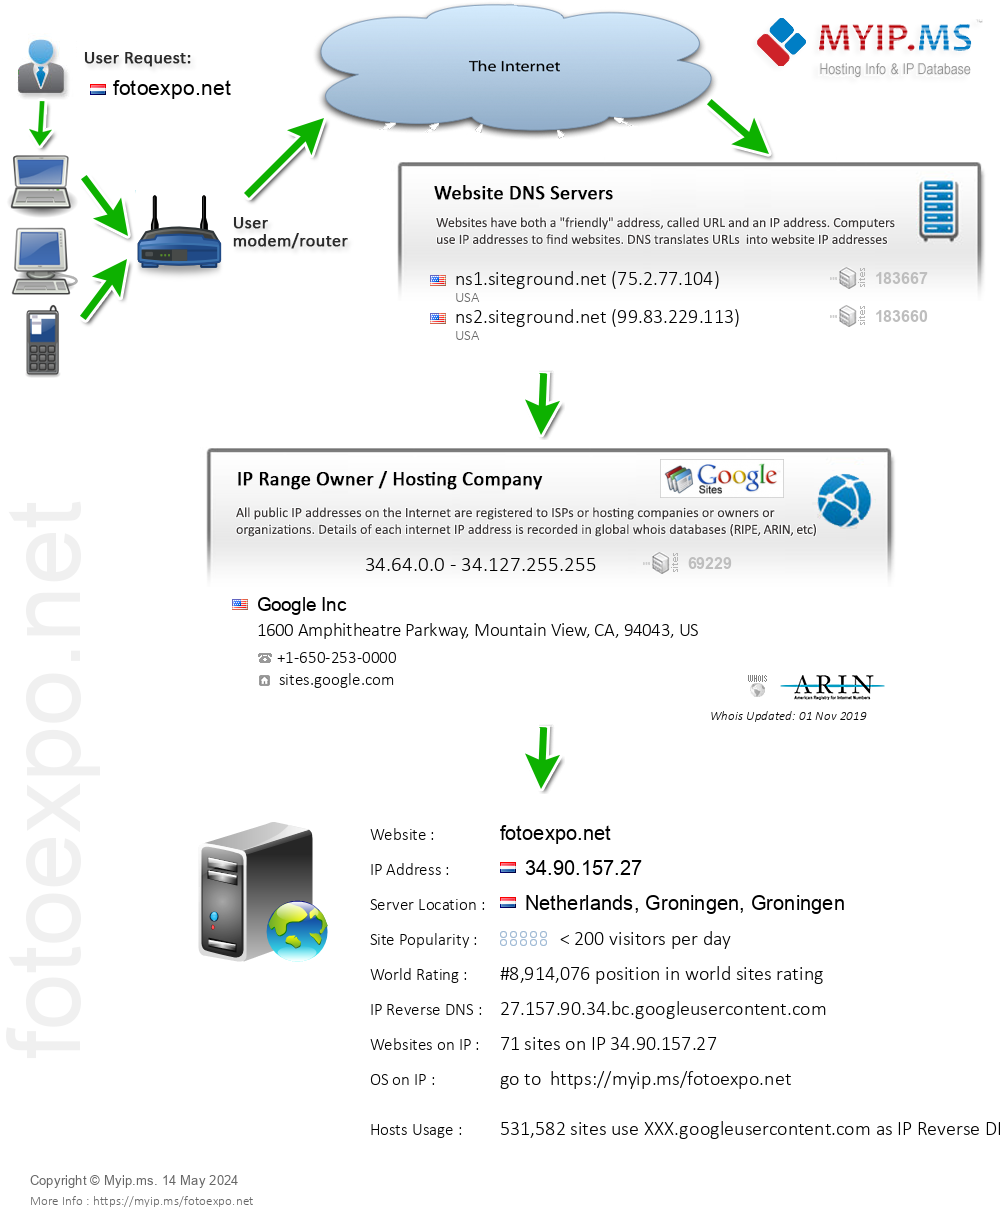 Fotoexpo.net - Website Hosting Visual IP Diagram